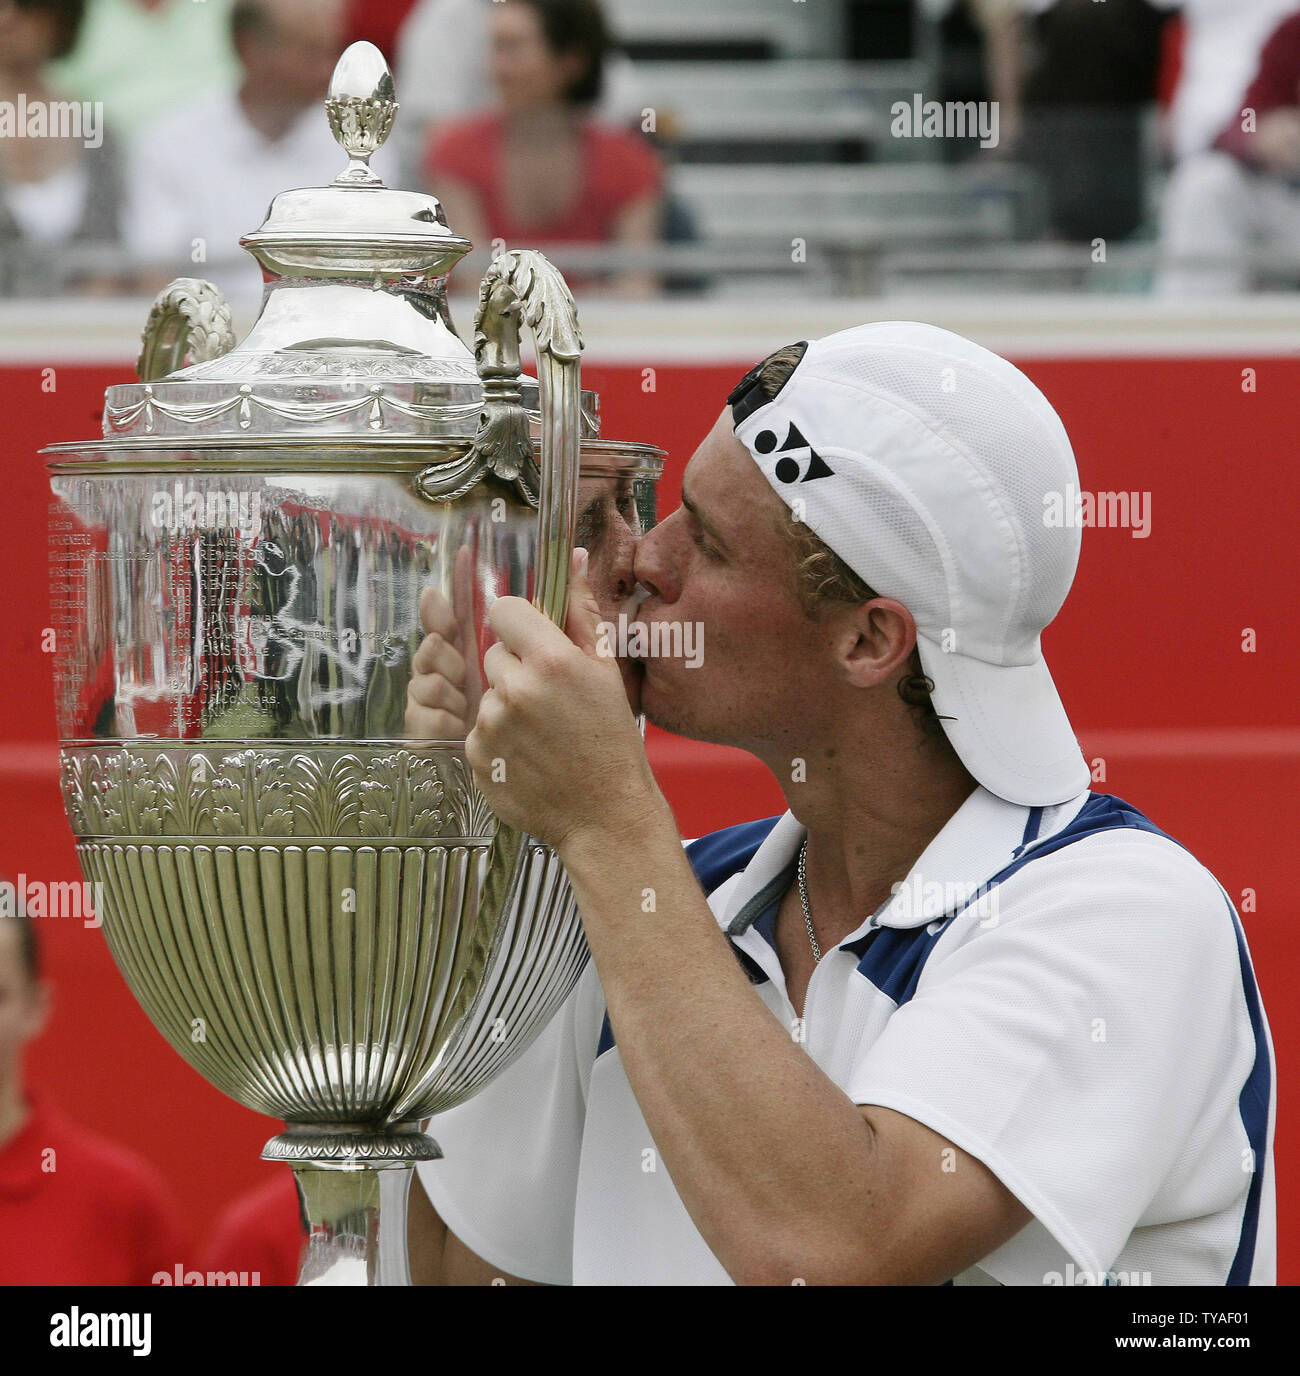 Australier Lleyton Hewitt, küßt die Trophäe nach seinem Sieg über den Amerikaner James Blake im Finale der 2006 Stella Artois Tennis Turnier in London am Sonntag, den 18. Juni 2006. Hewitt das Match gewonnen 6-4 6-4. (UPI Foto/Hugo Philpott) Stockfoto